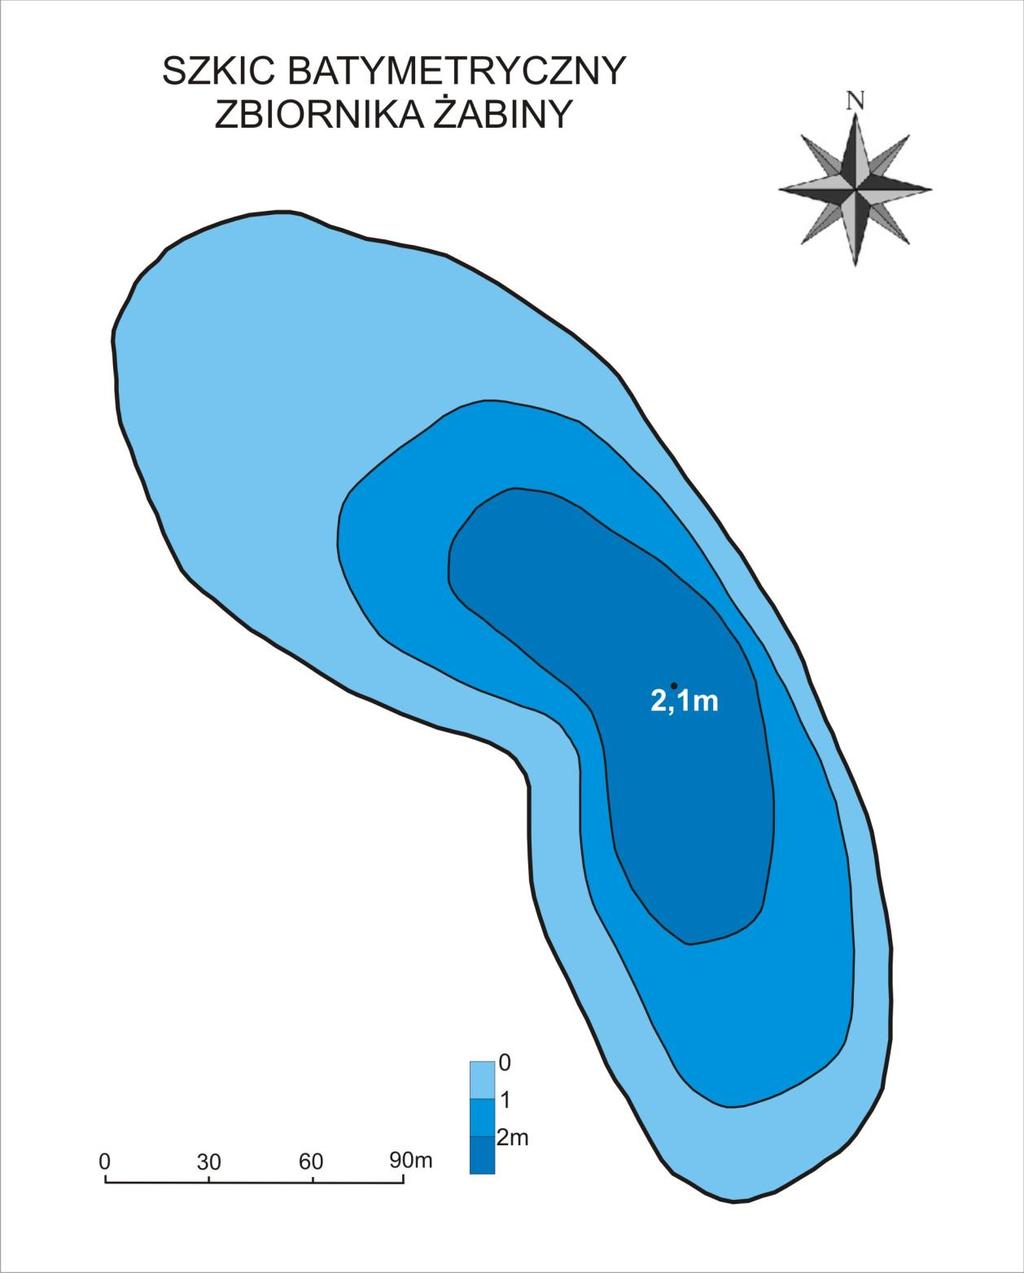 Morfologię zbiornika Żabiny i jego wskaźniki morfometryczne wyznaczono na podstawie danych geodezyjnych oraz poprzez bezpośrednie pomiary